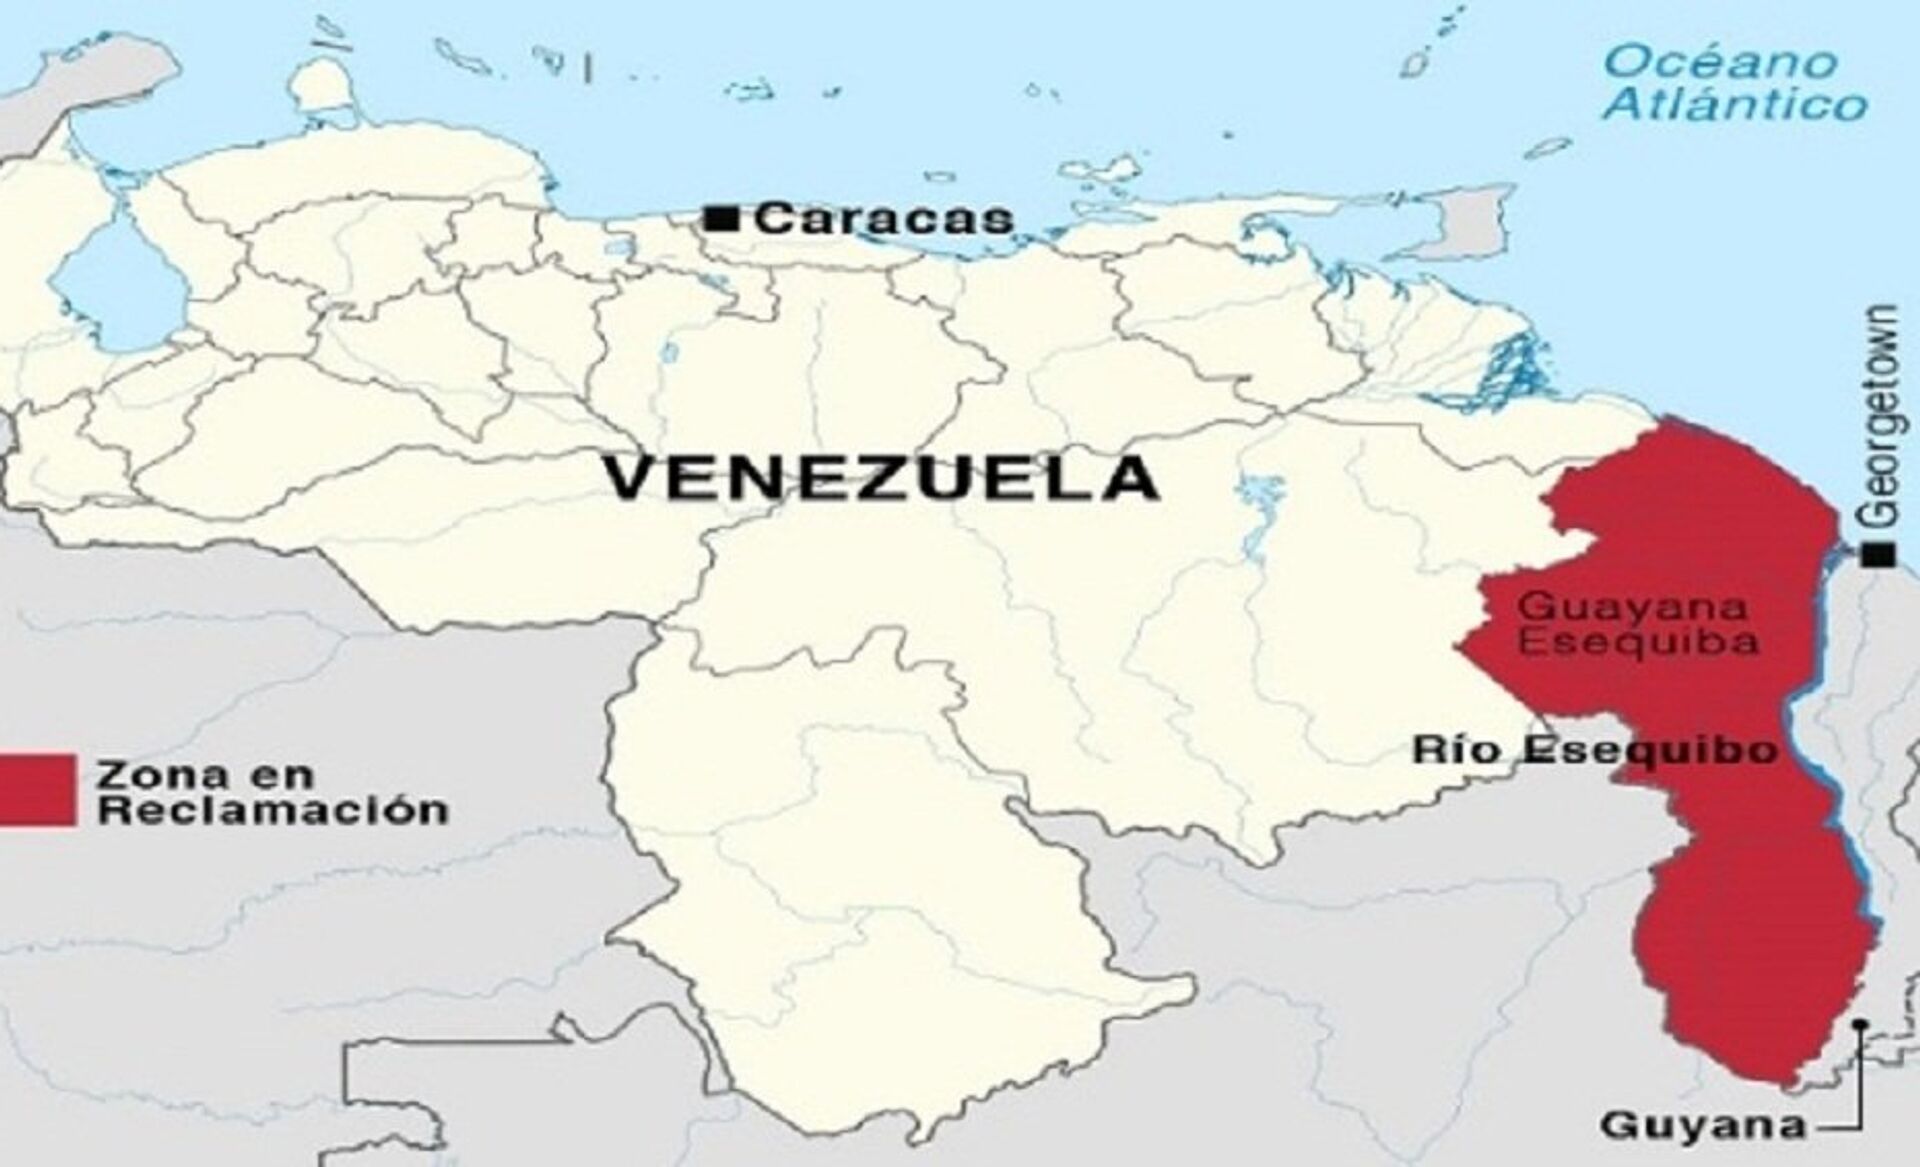 Após interceptar navios, Venezuela acusa Guiana de 'tentar fabricar um conflito na região' - Sputnik Brasil, 1920, 01.02.2021